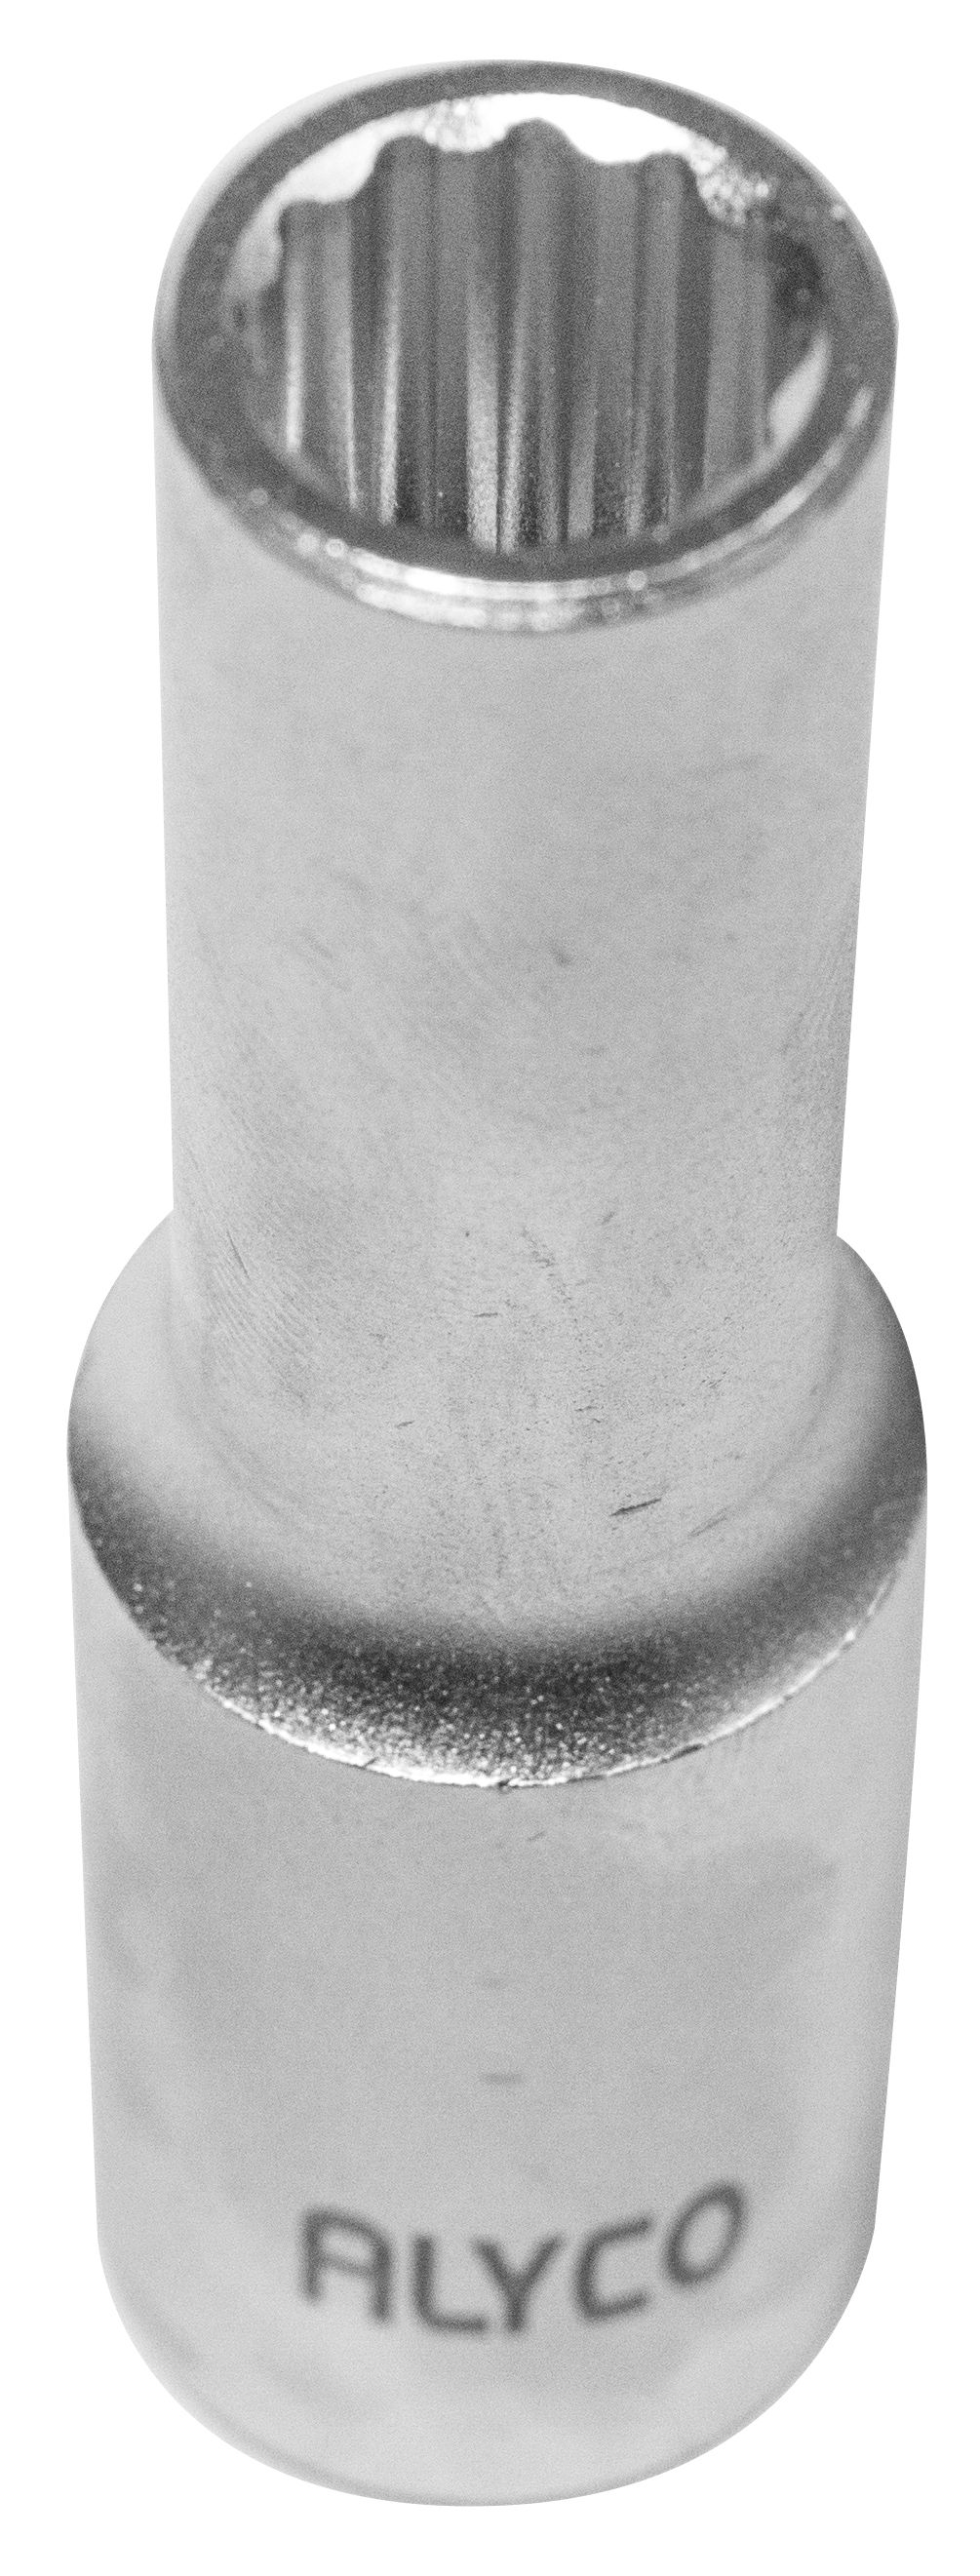 Llave de vaso de cuadradillo de 1/2 con boca de perfil bihexagonal en  medida de milimetros — Ferretería Miranda